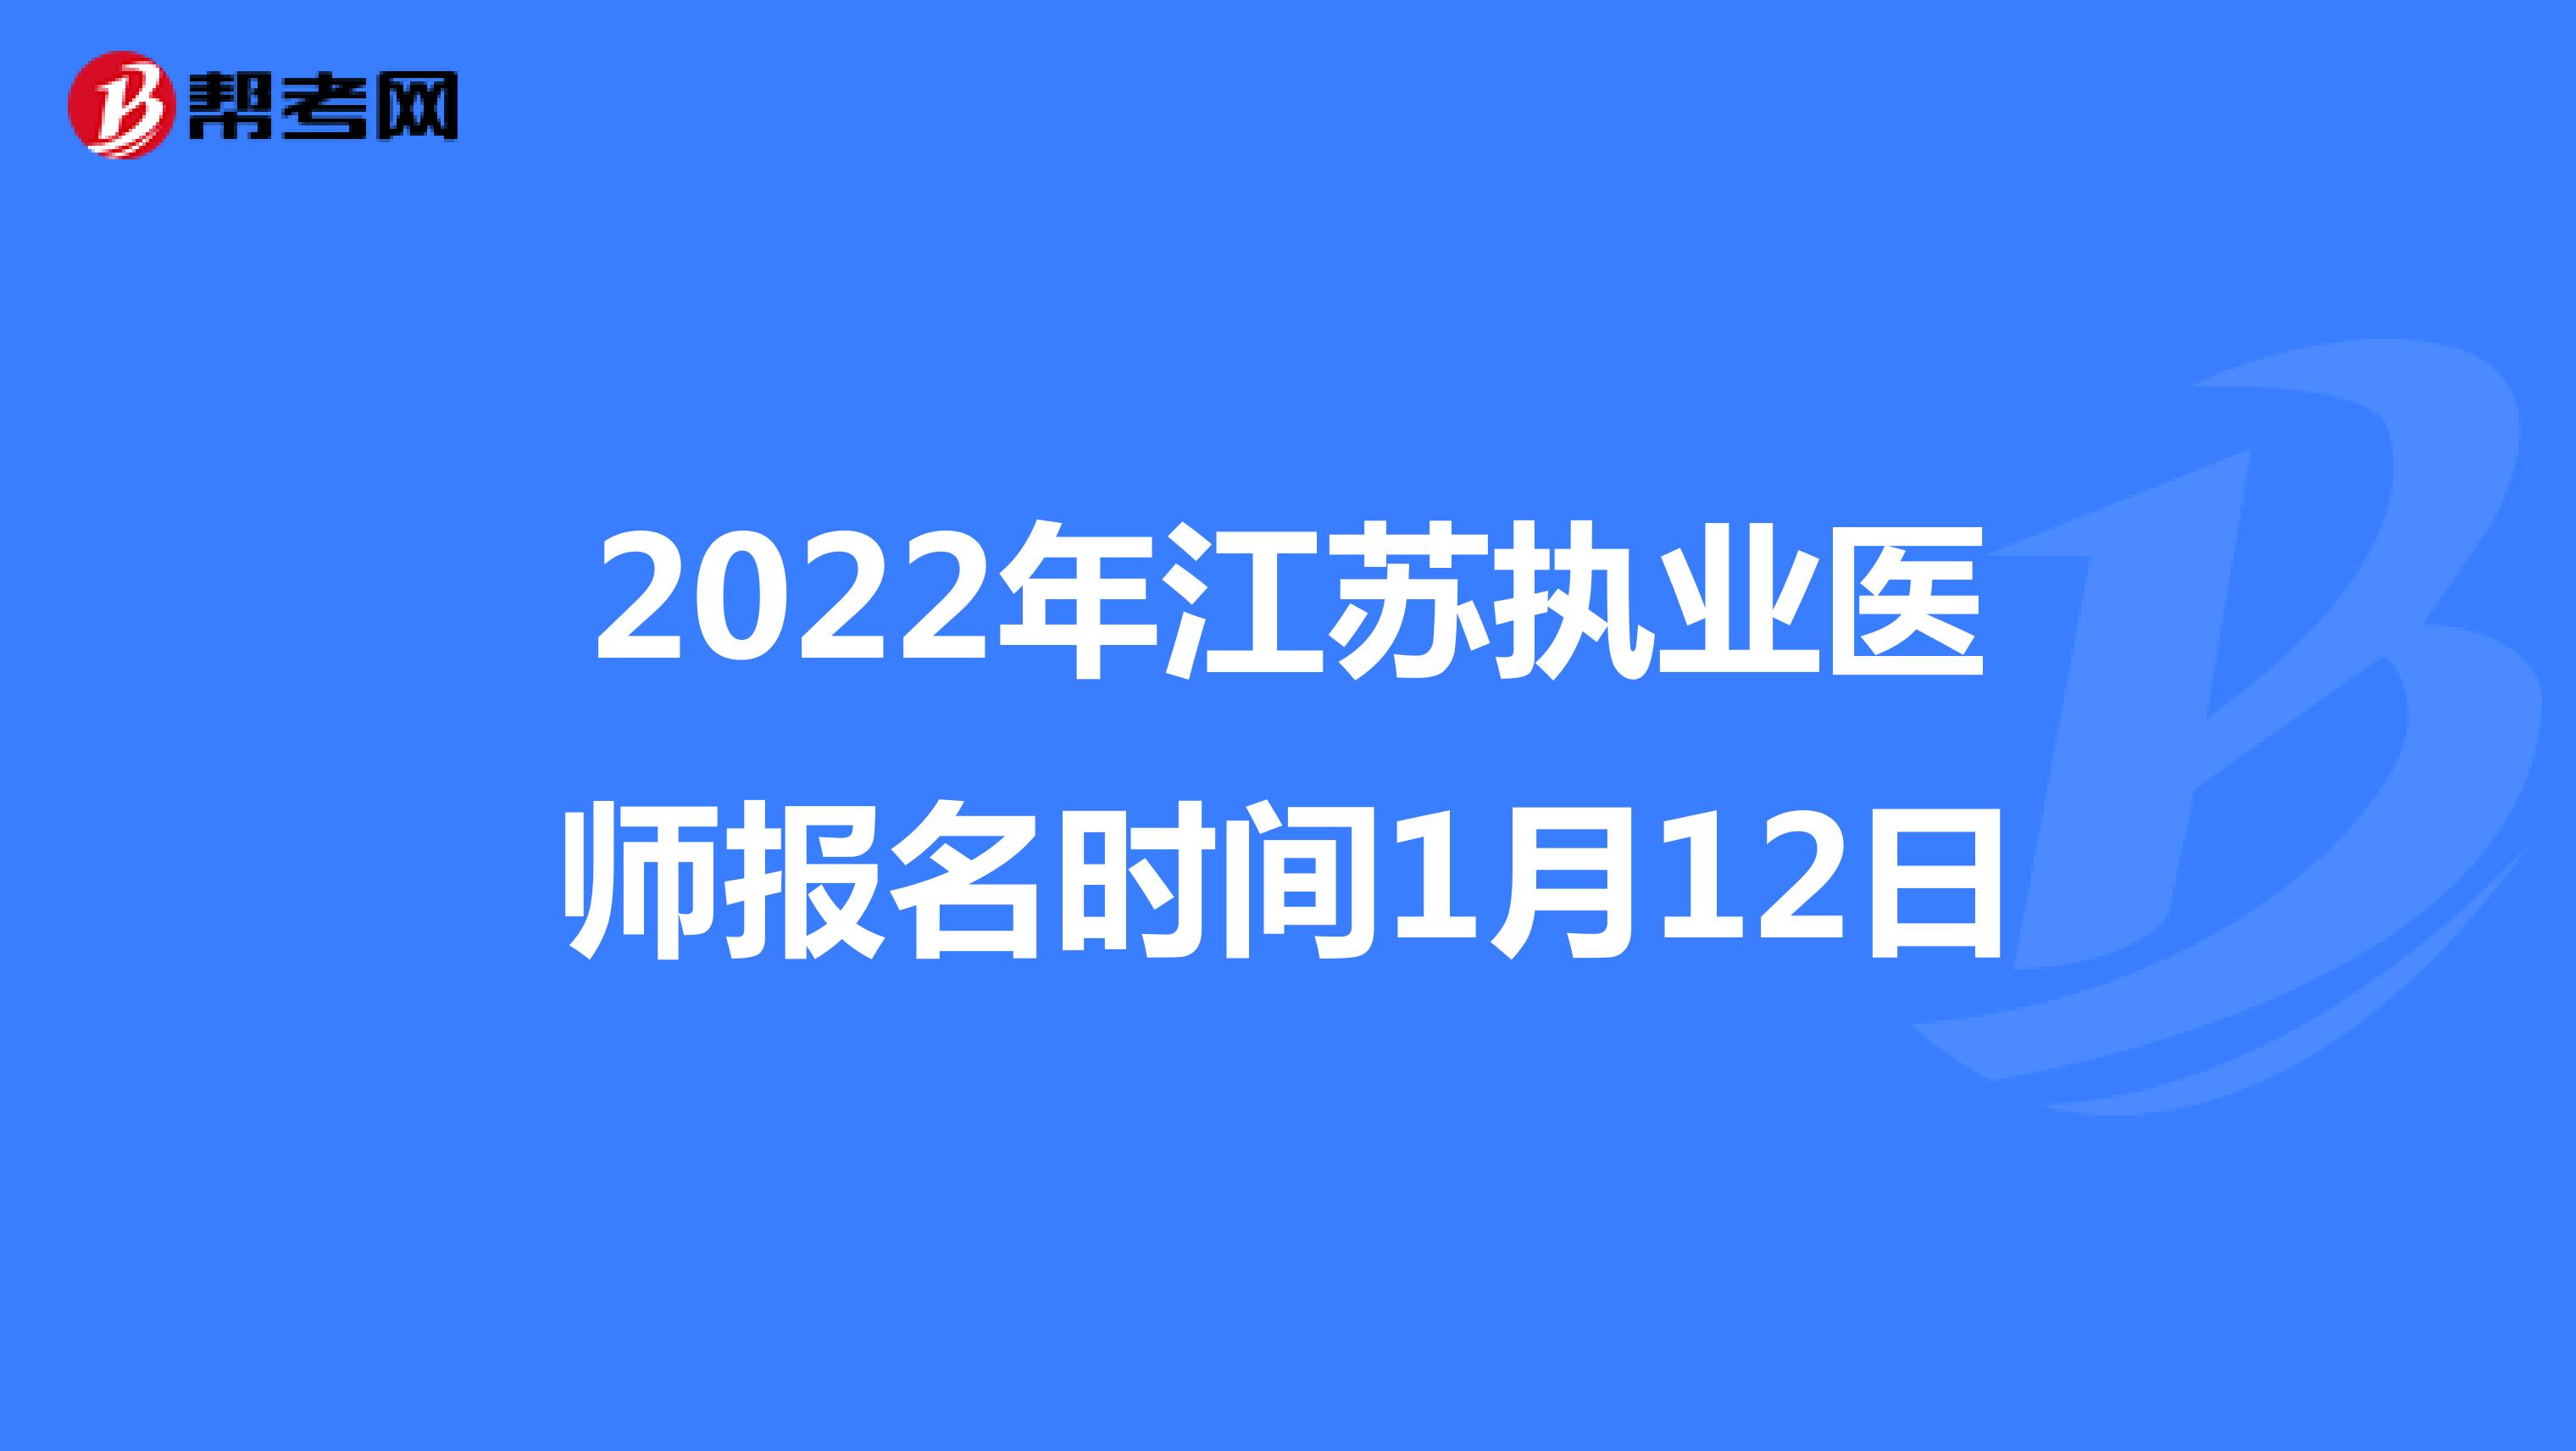 2022年江苏执业医师报名时间1月12日